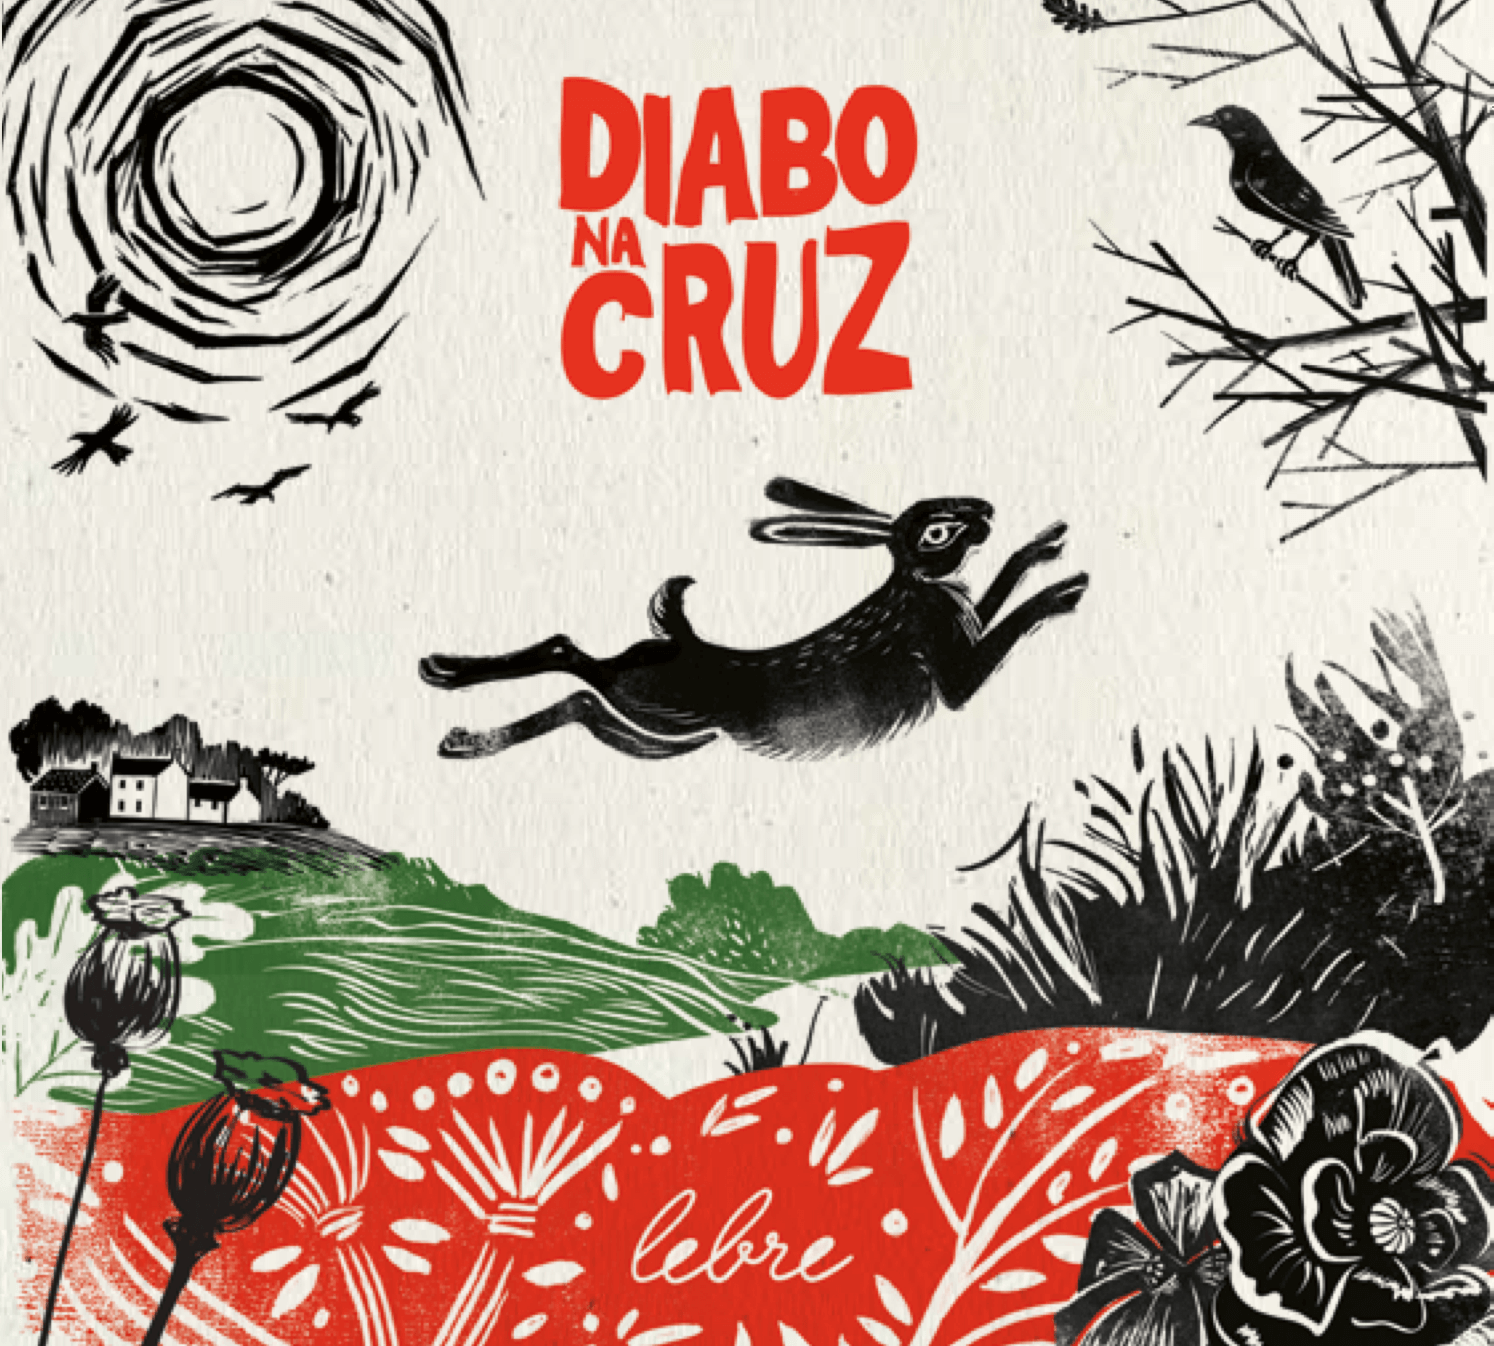 Diabo na Cruz lançam novo disco em Outubro